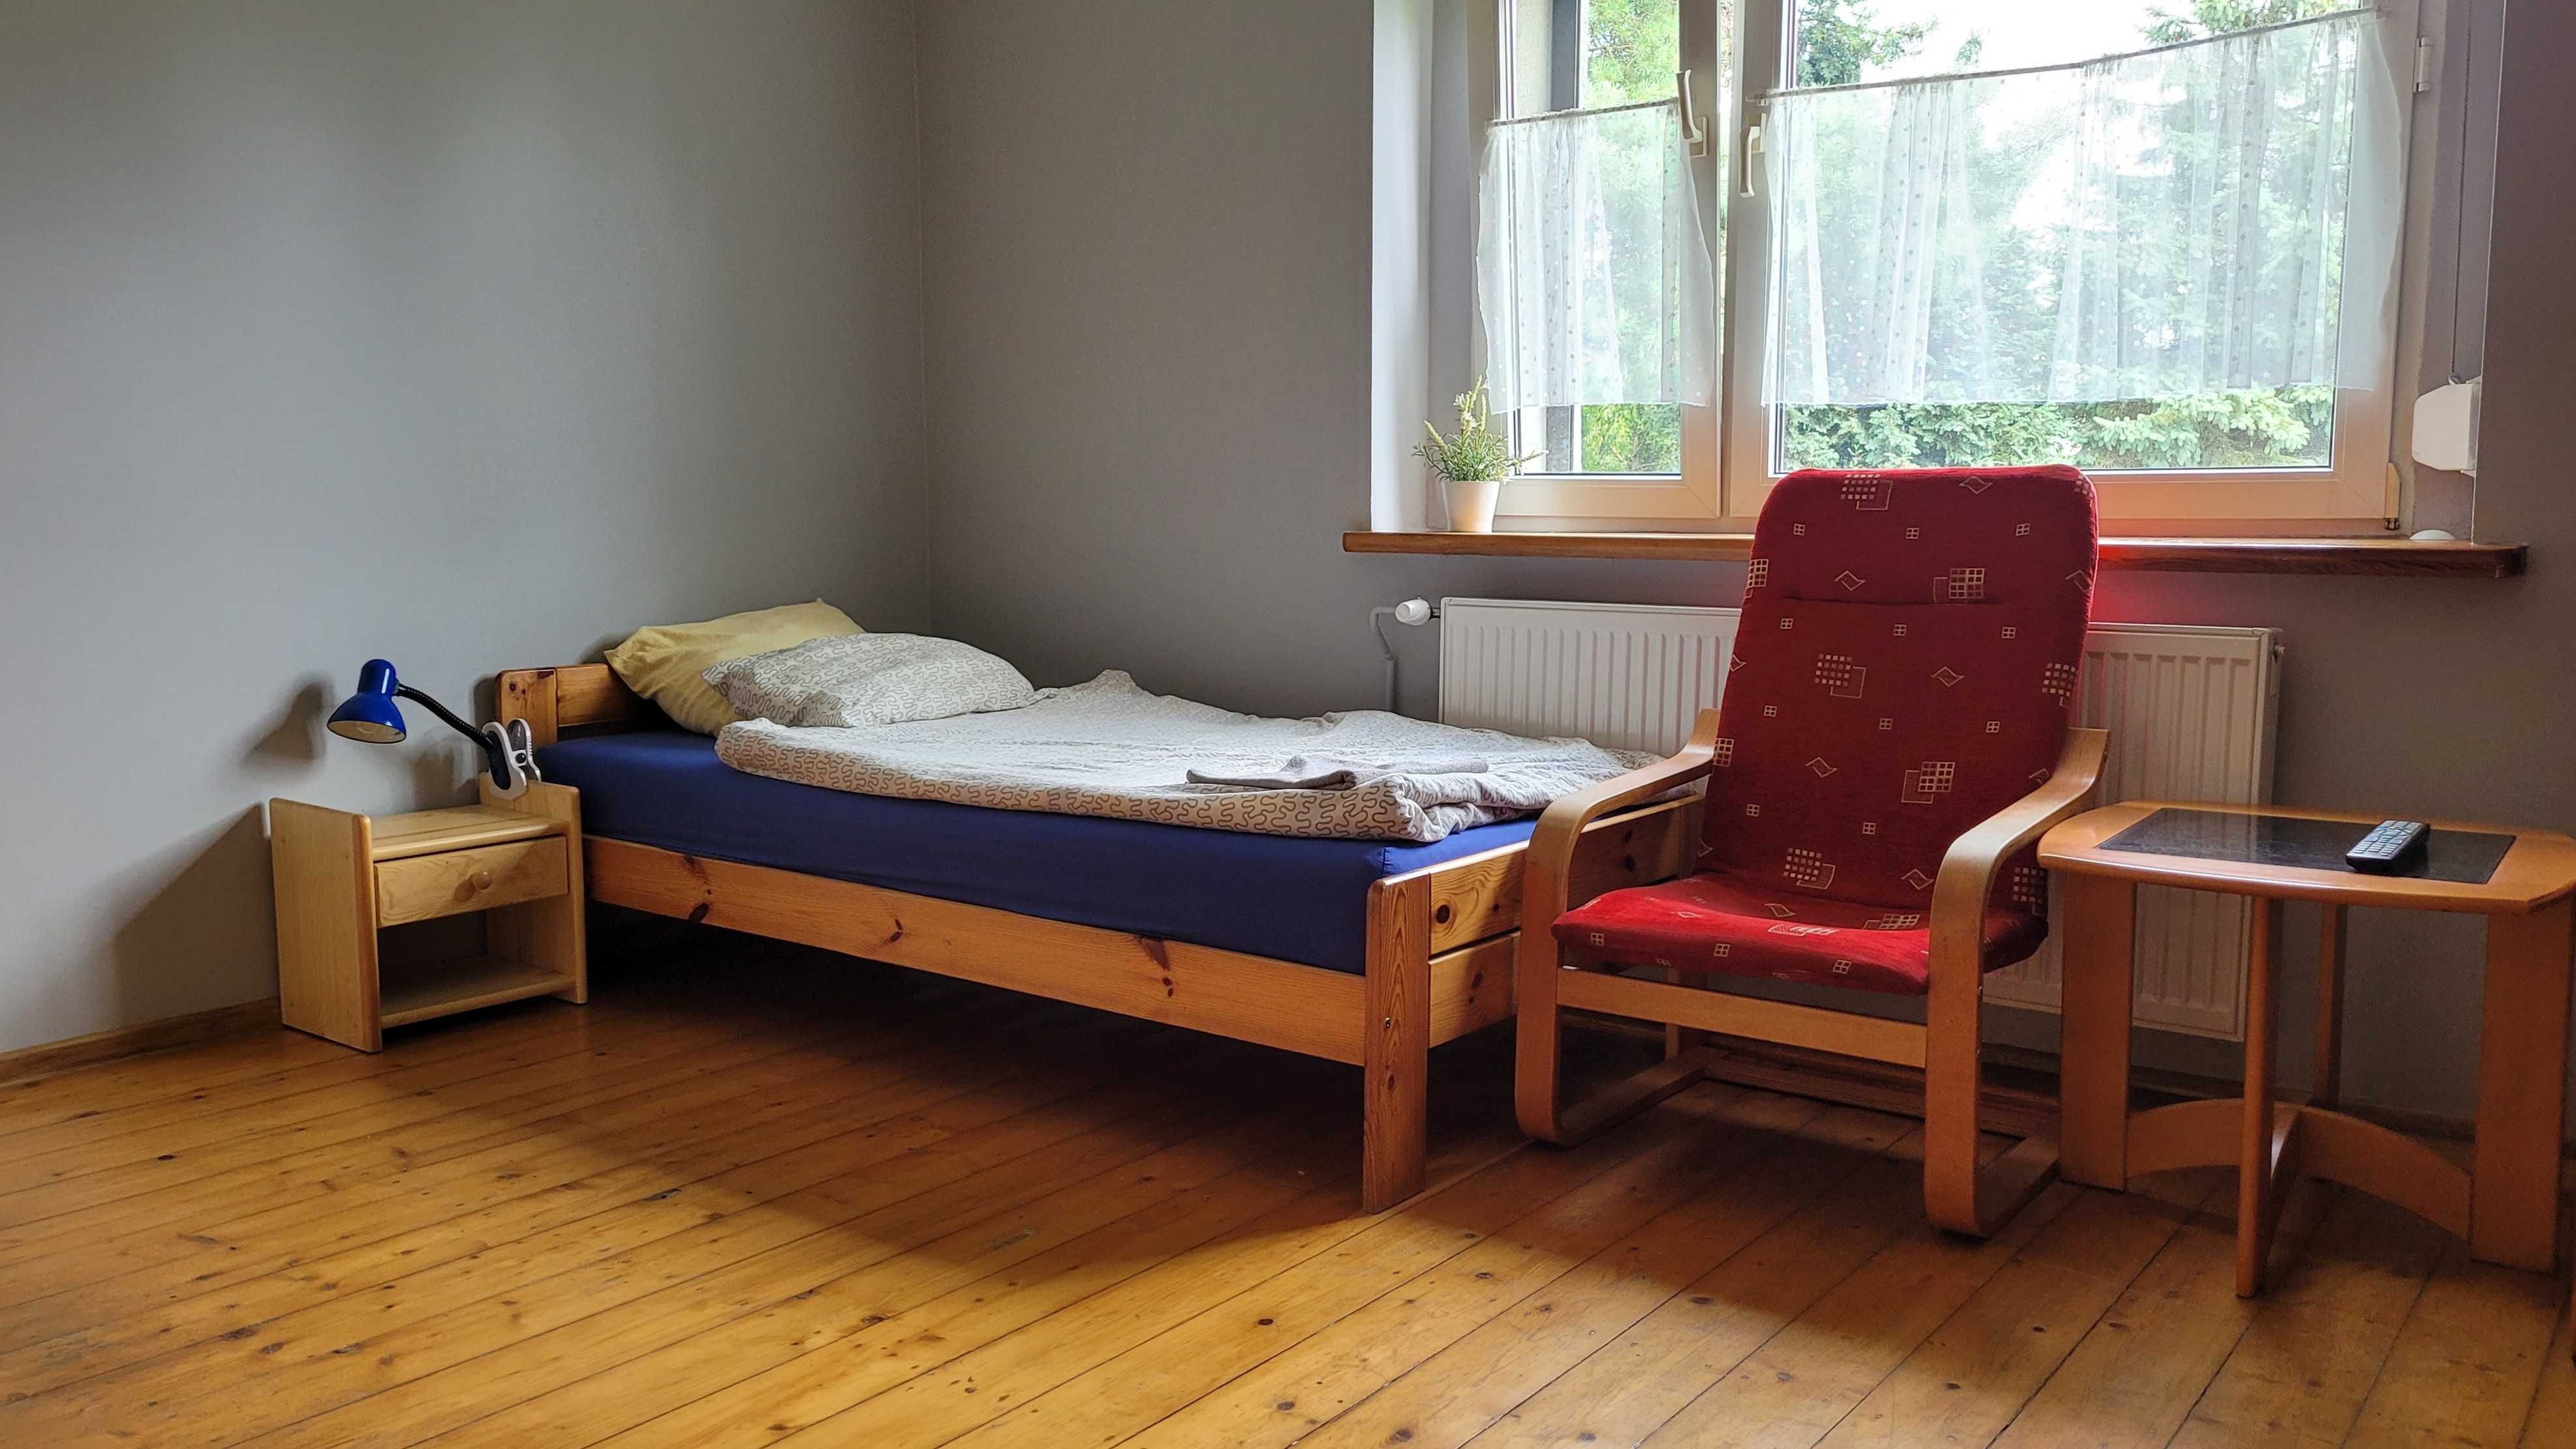 Noclegi Mikołów, dom pokoje kwatery mieszkanie hostel pracowników firm